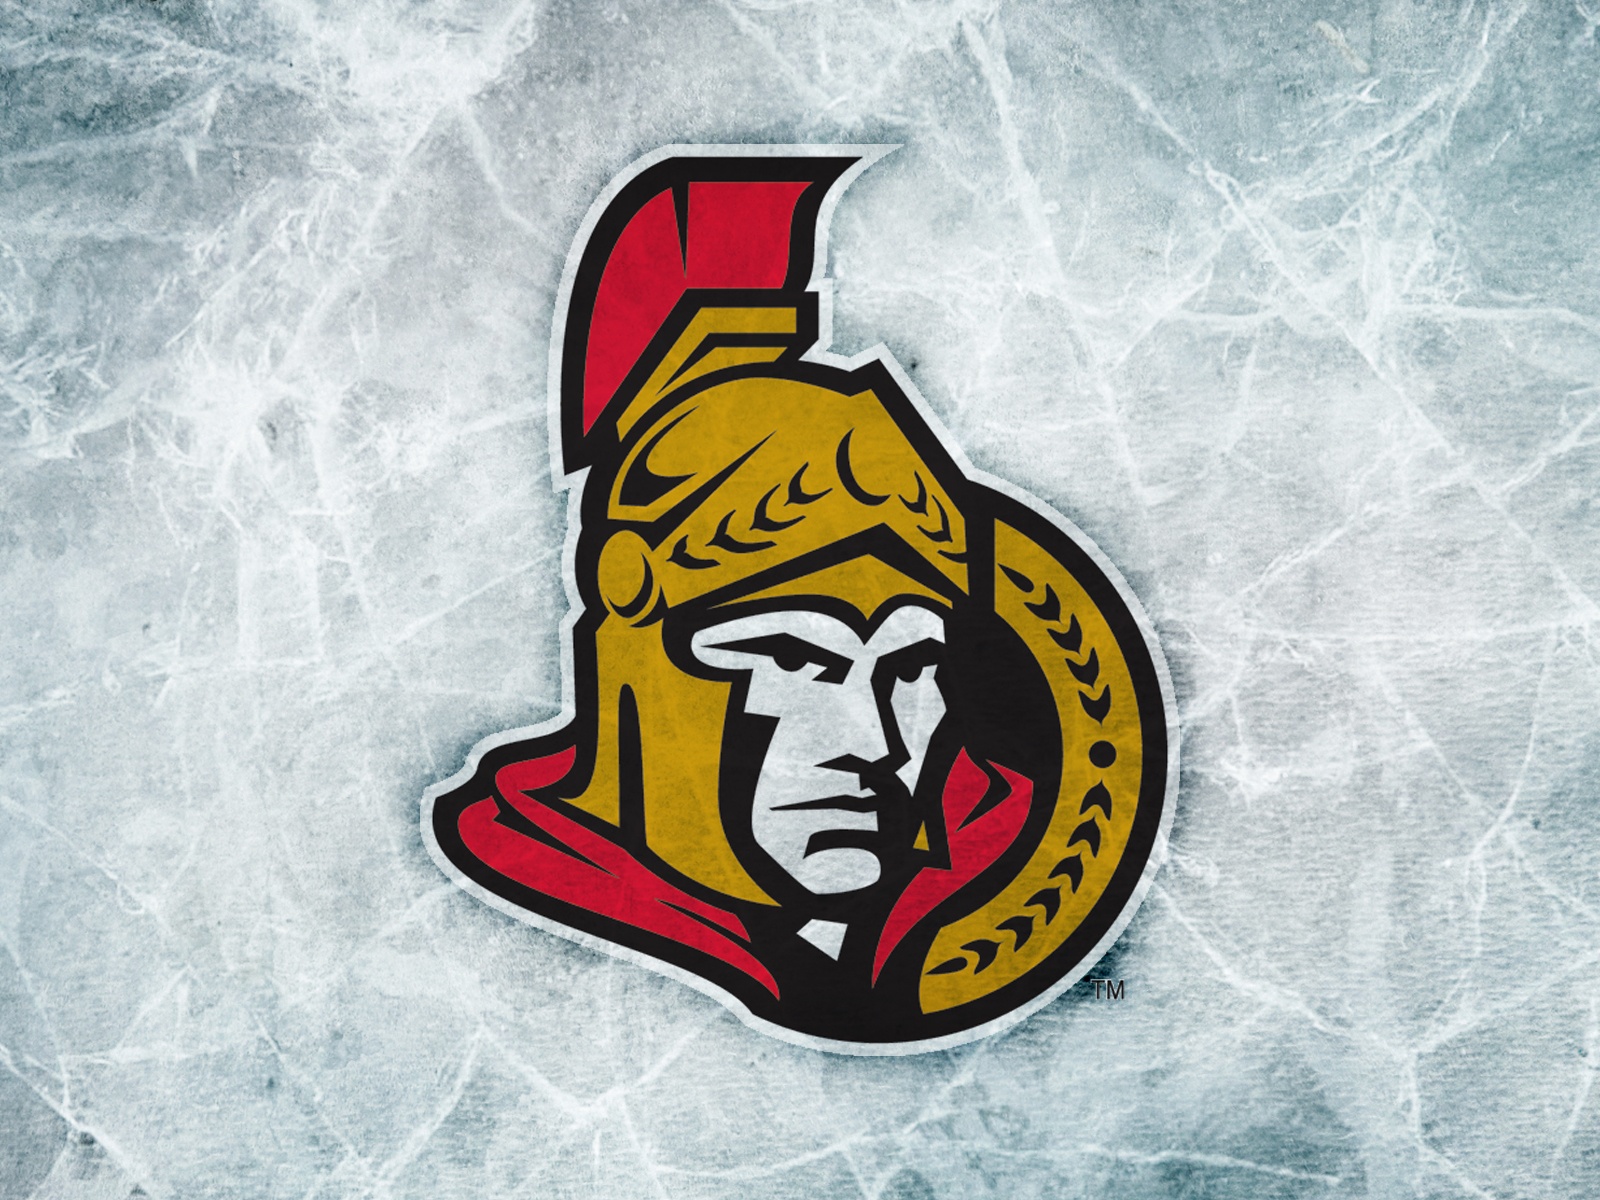 Ottawa Senators Wallpaper - Ottawa Senators Logo 2016 , HD Wallpaper & Backgrounds